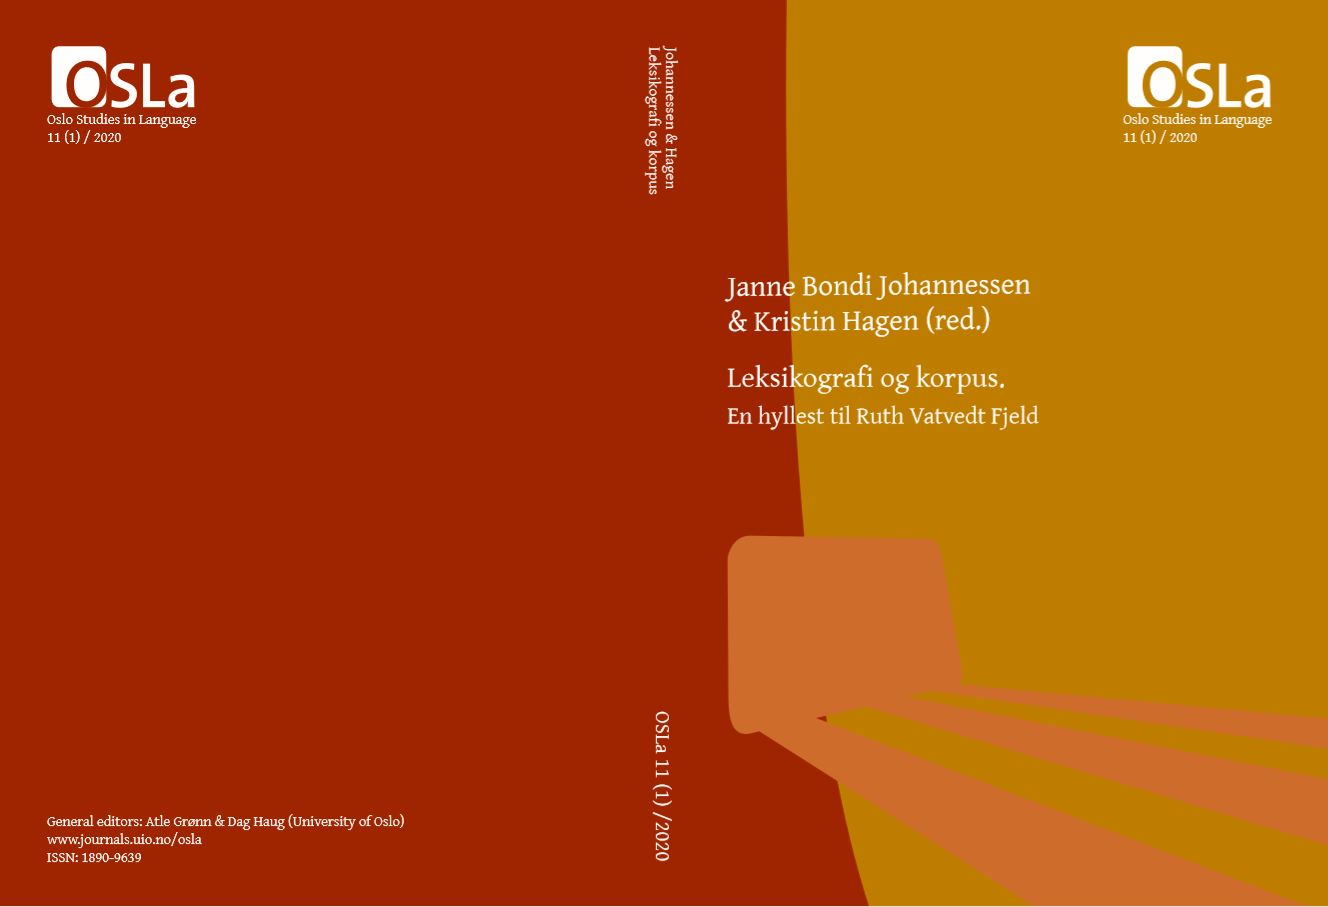 ohannessen, Janne Bondi & Kristin Hagen (red.) Leksikografi og korpus. En hyllest til Ruth Vatvedt Fjeld, Oslo Studies in Language 11(1), 2020. 3–5. (ISSN 1890-9639 / ISBN 978-82-91398-12-9)